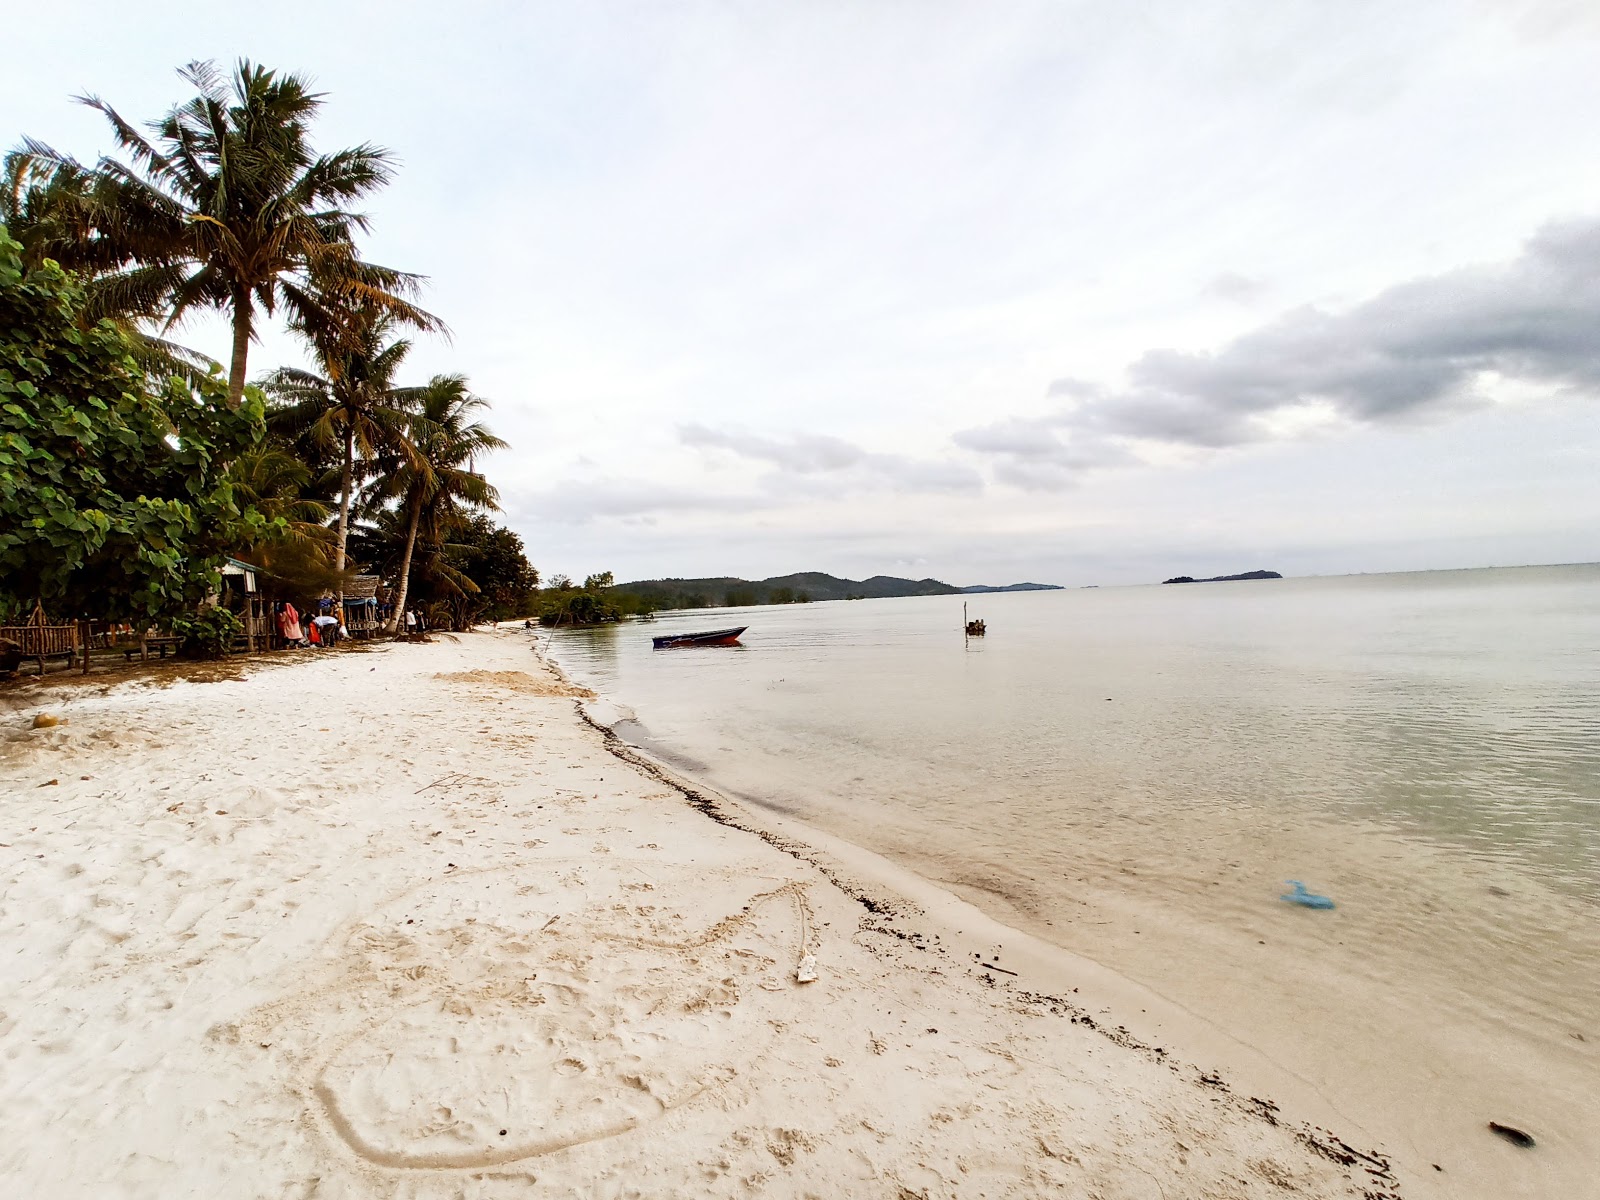 Tiga Putri Beach'in fotoğrafı geniş plaj ile birlikte